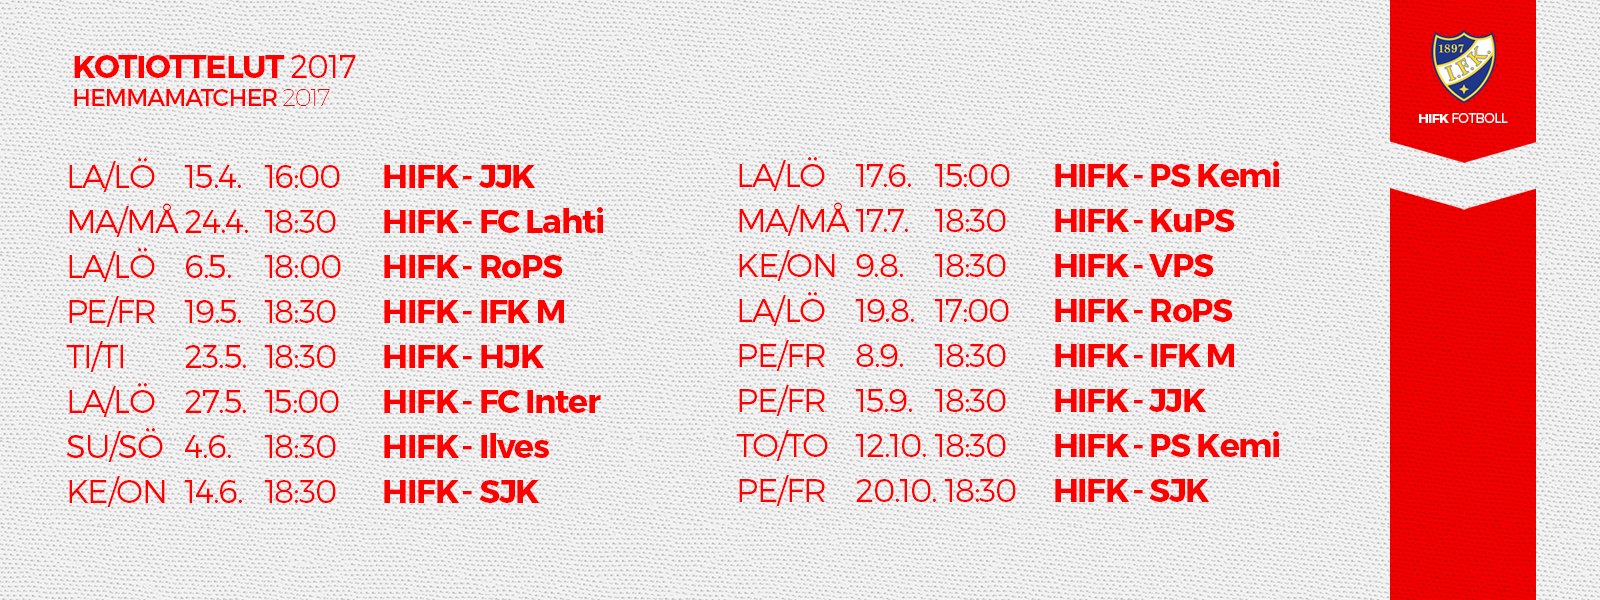 HIFK:n kotiotteluiden pääsyliput myyntiin perjantaina 17. maaliskuuta